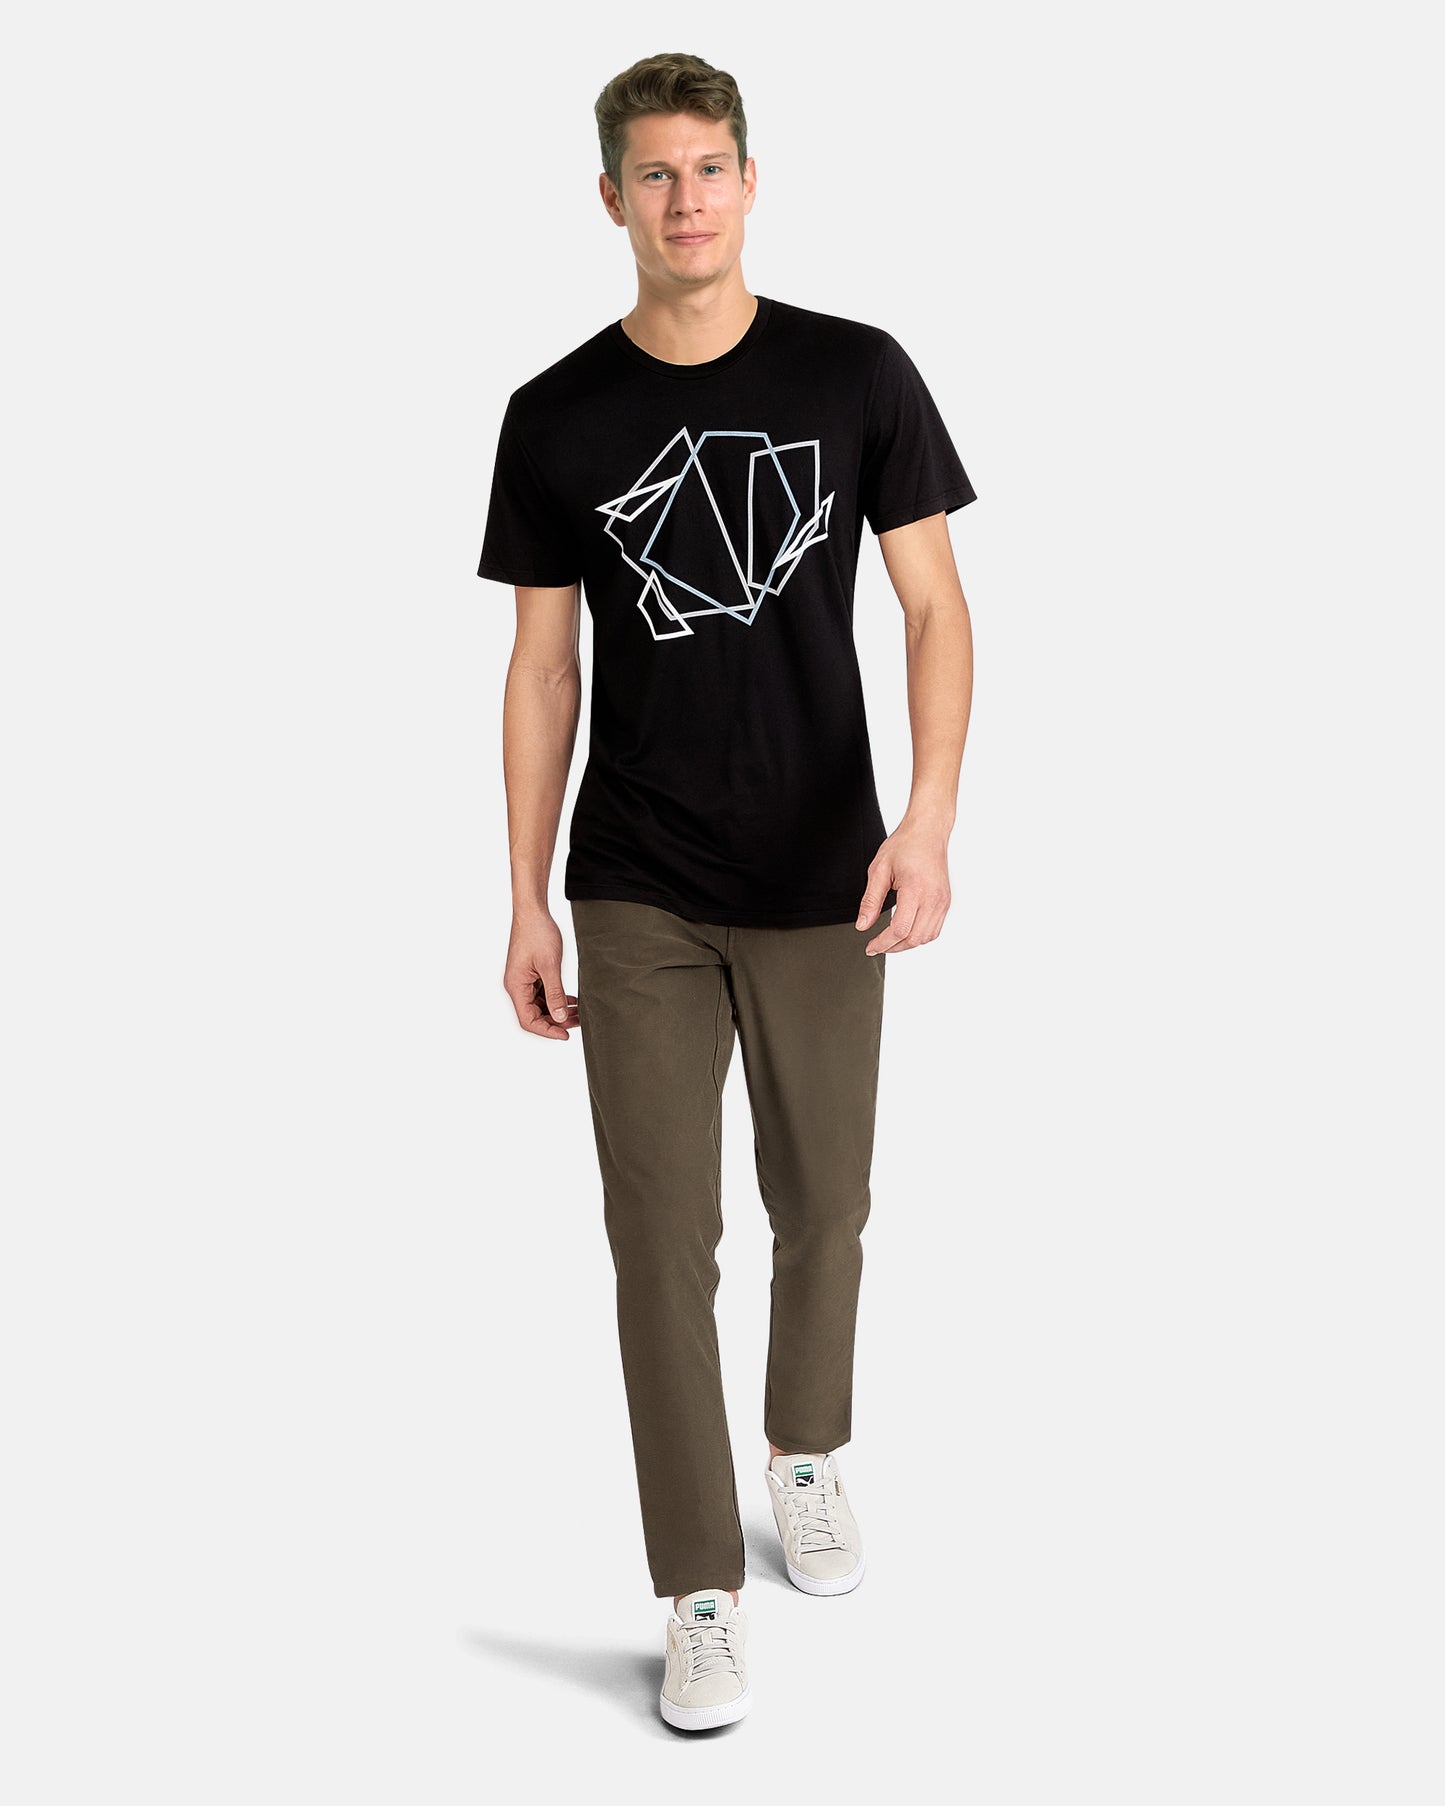 Shape Tangle T-Shirt, Black